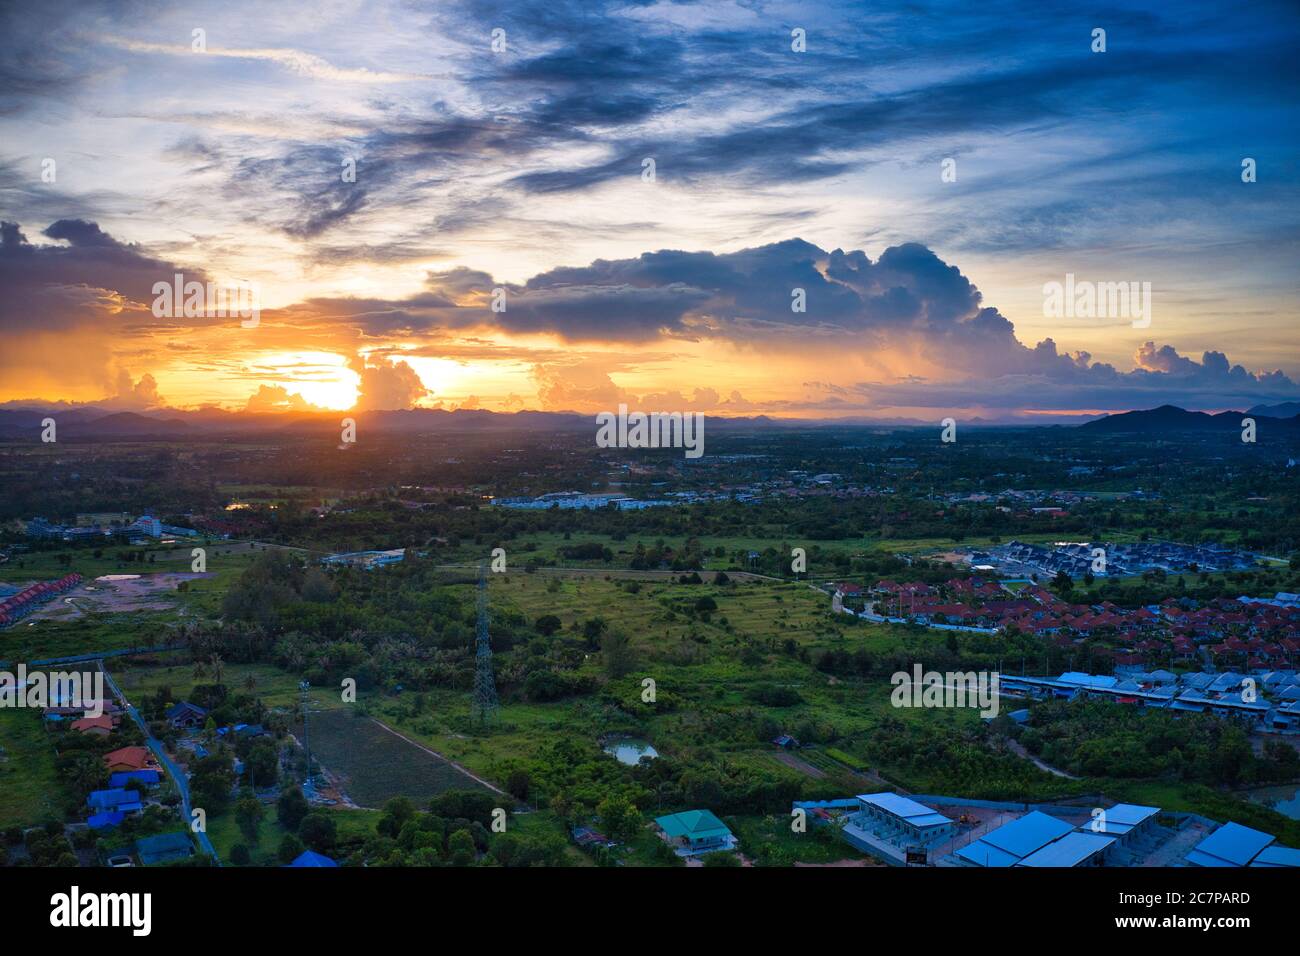 Cette photo unique montre le paysage arrière de Hua Hin en Thaïlande pendant un coucher de soleil avec un grand ciel. Vous pouvez également voir une chaîne de montagnes à l'arrière. Banque D'Images